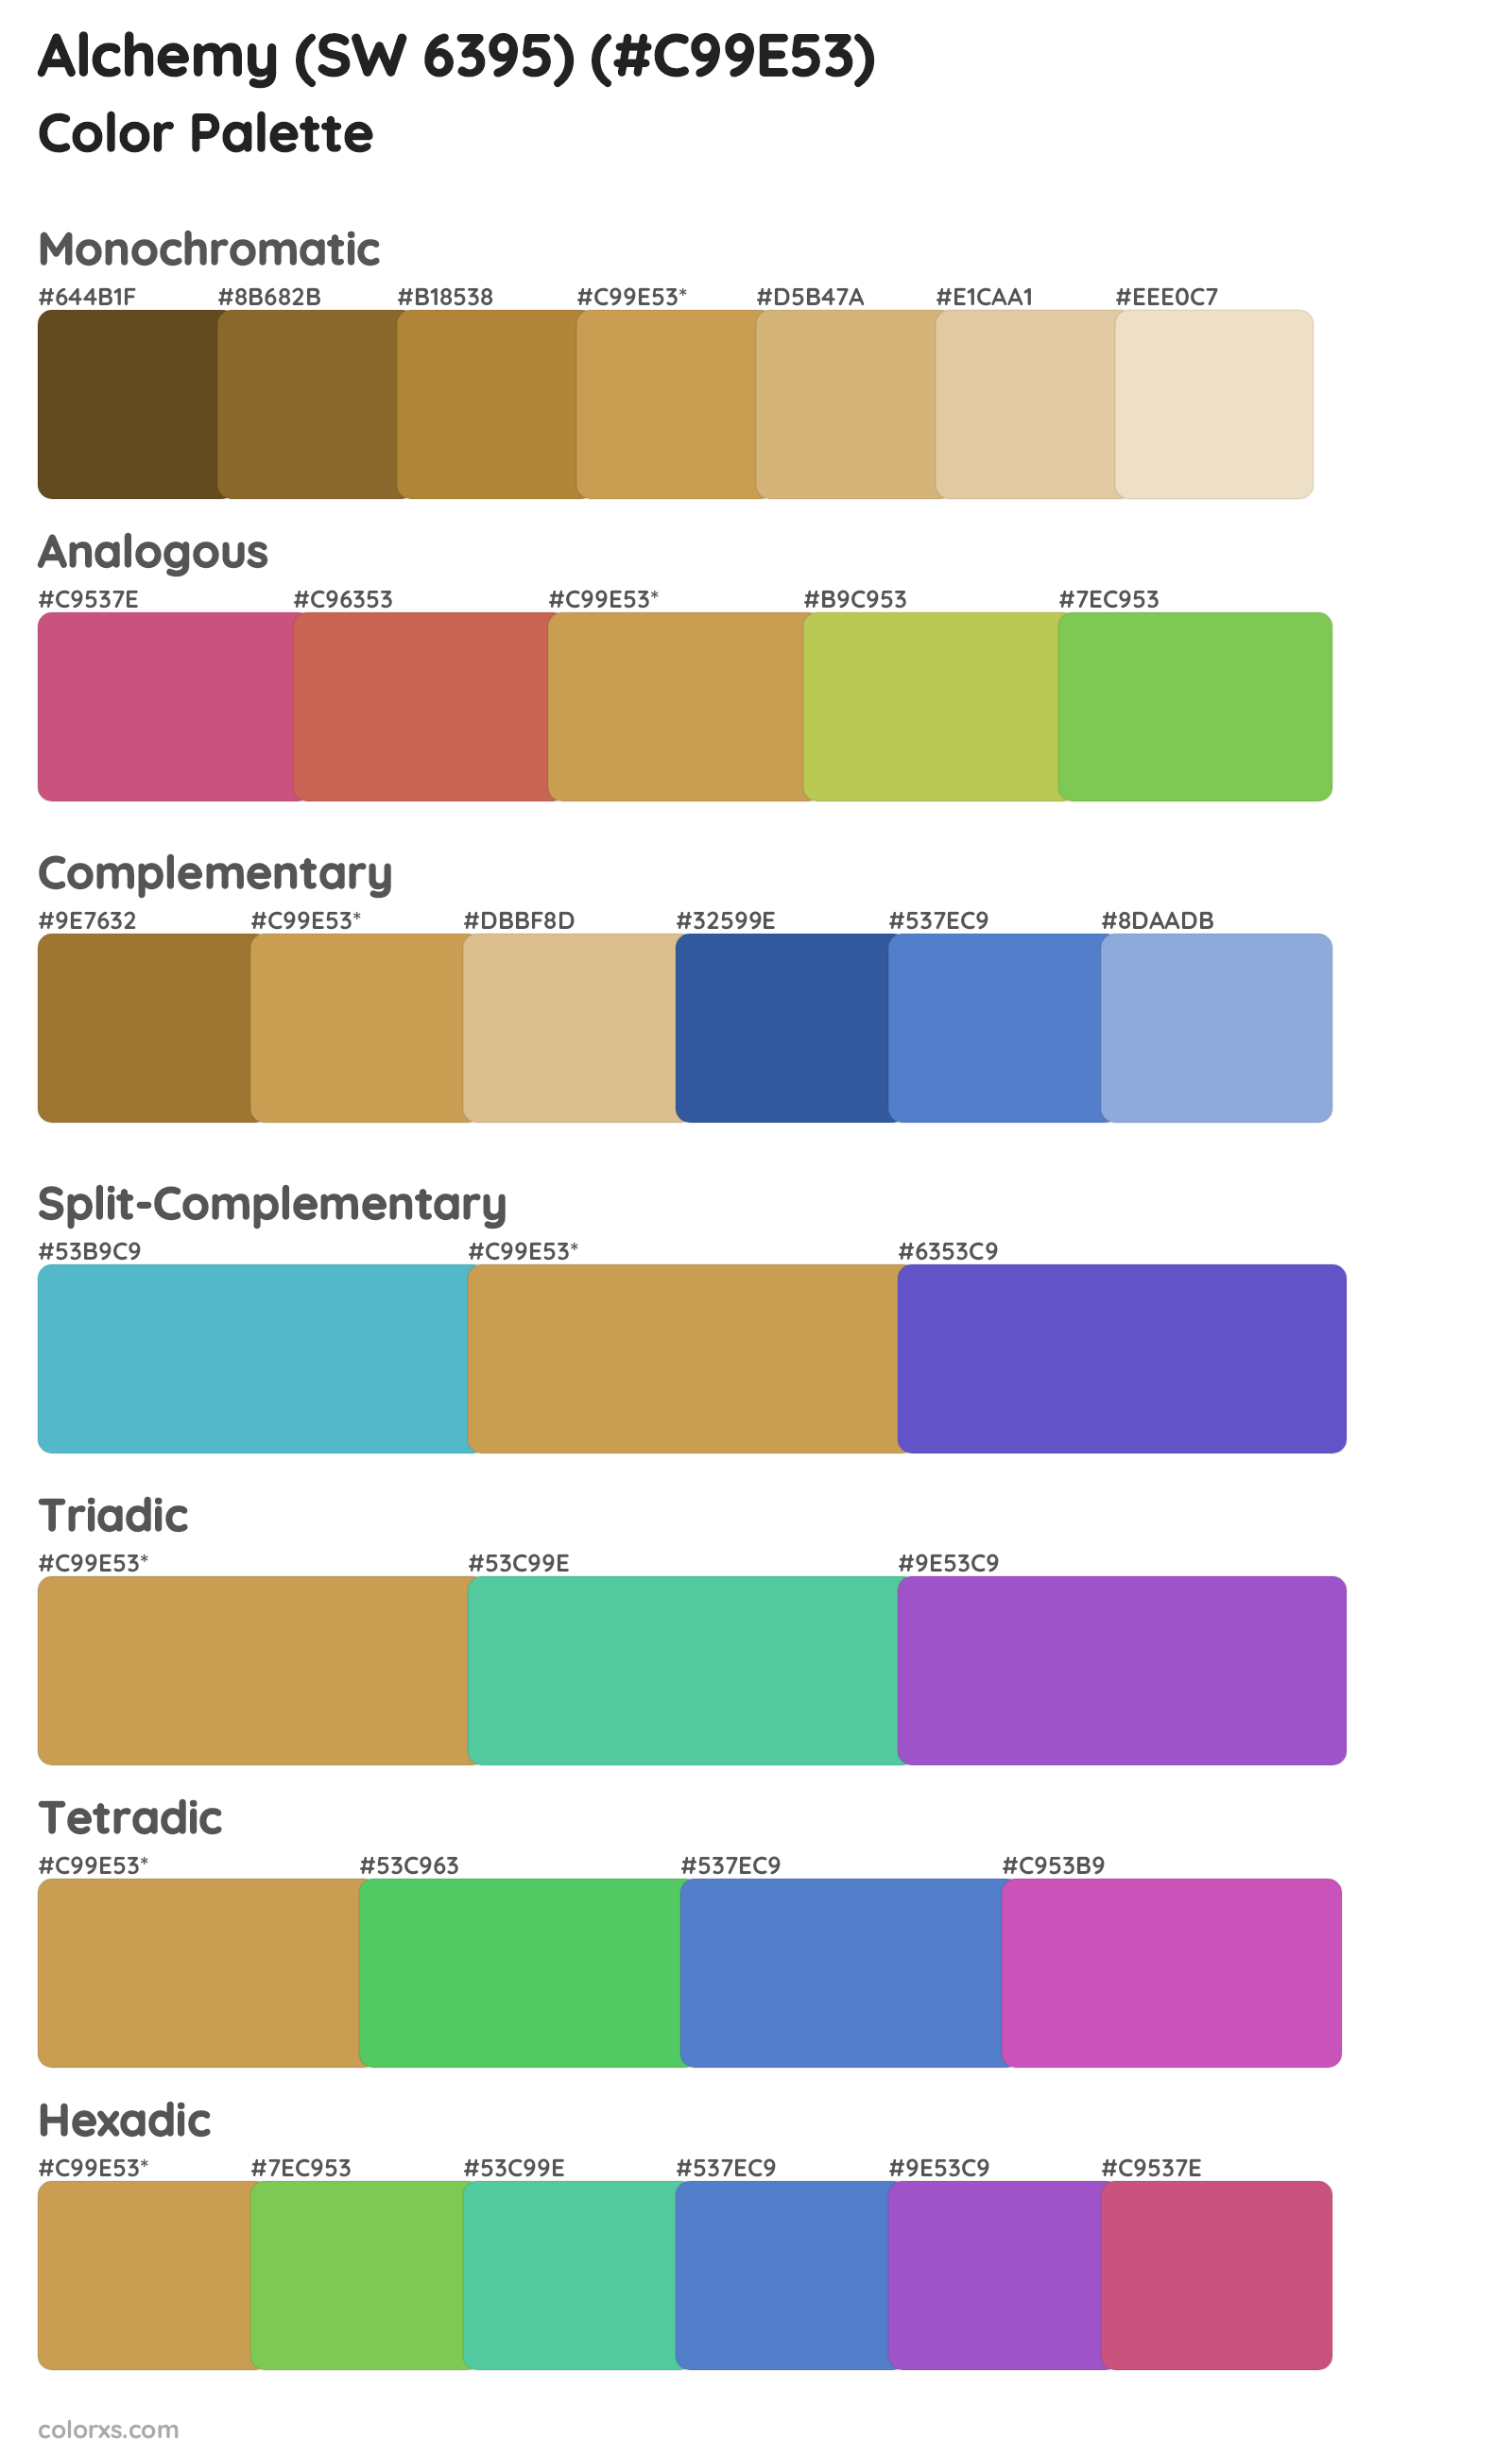 Alchemy (SW 6395) Color Scheme Palettes